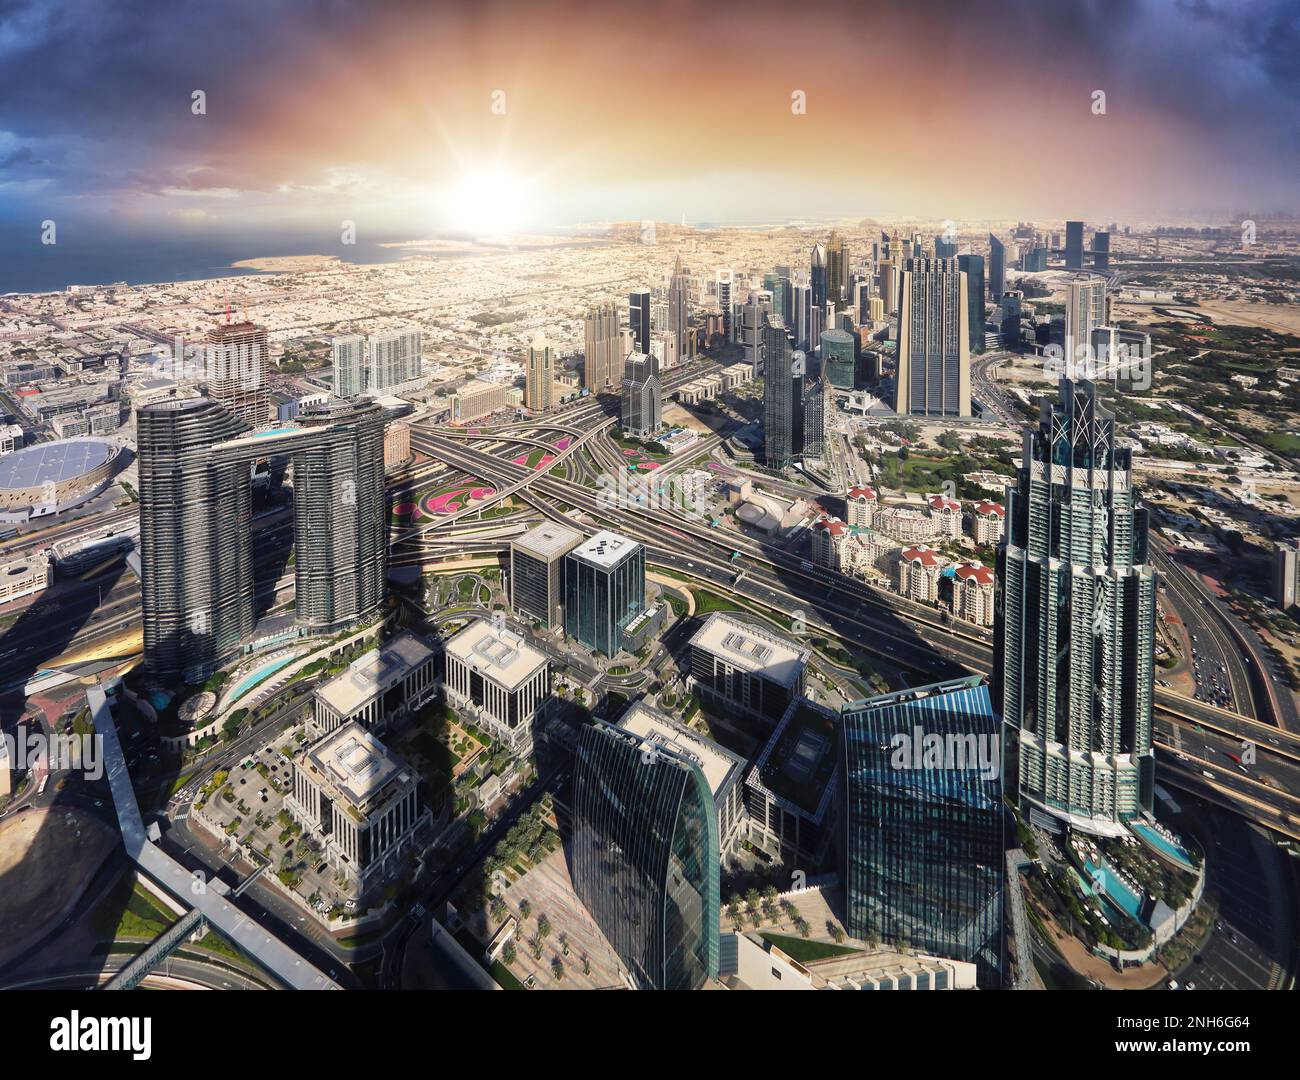 Centro de la ciudad de Dubai al atardecer - increíble horizonte de la ciudad con rascacielos de lujo al amanecer, Emiratos Árabes Unidos Foto de stock